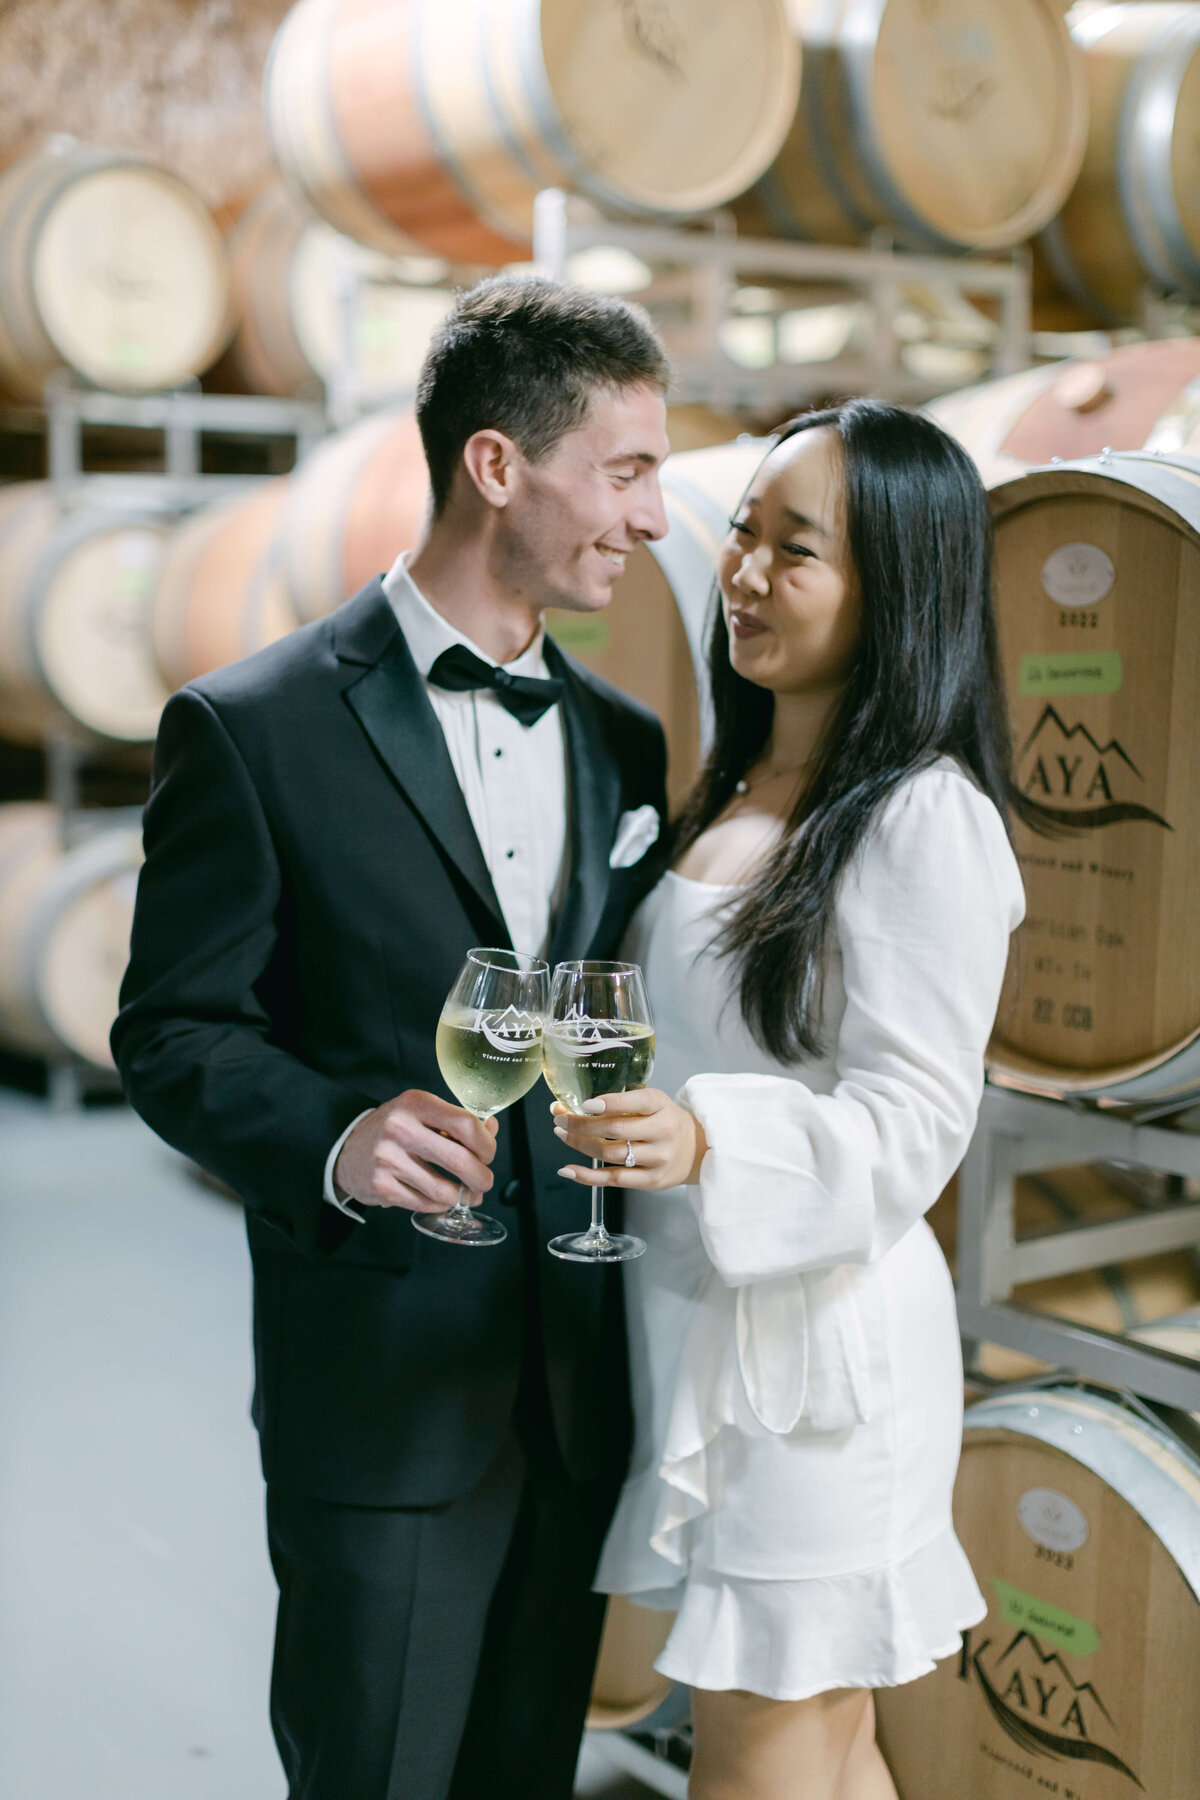 A bride and groom cheers at Kaya Vineyards.